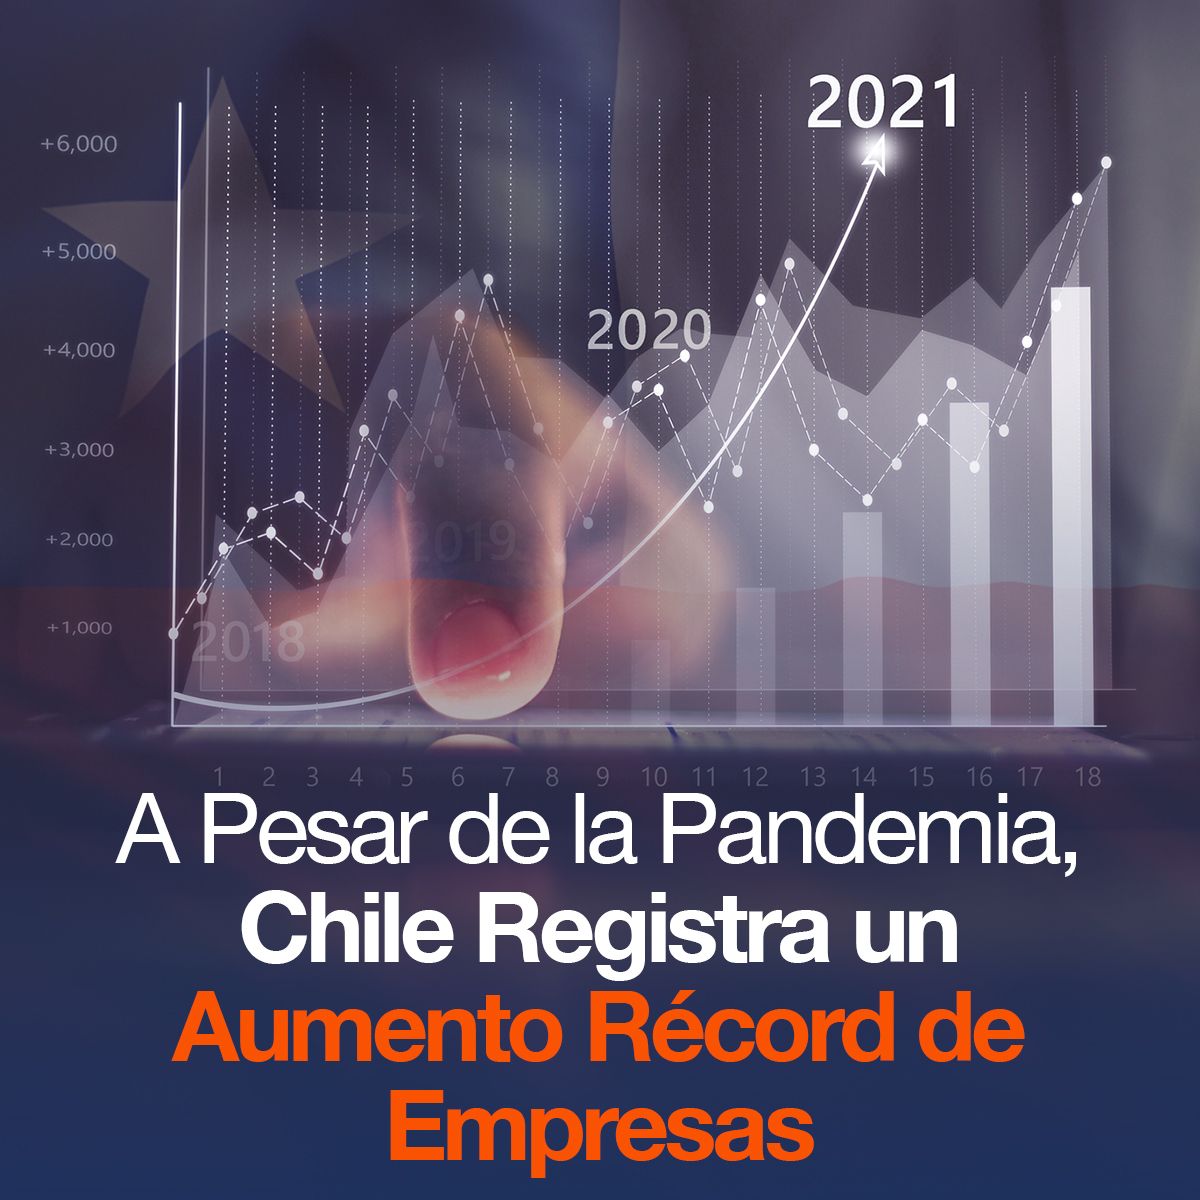 A Pesar de la Pandemia, Chile Registra un Aumento Récord de Empresas